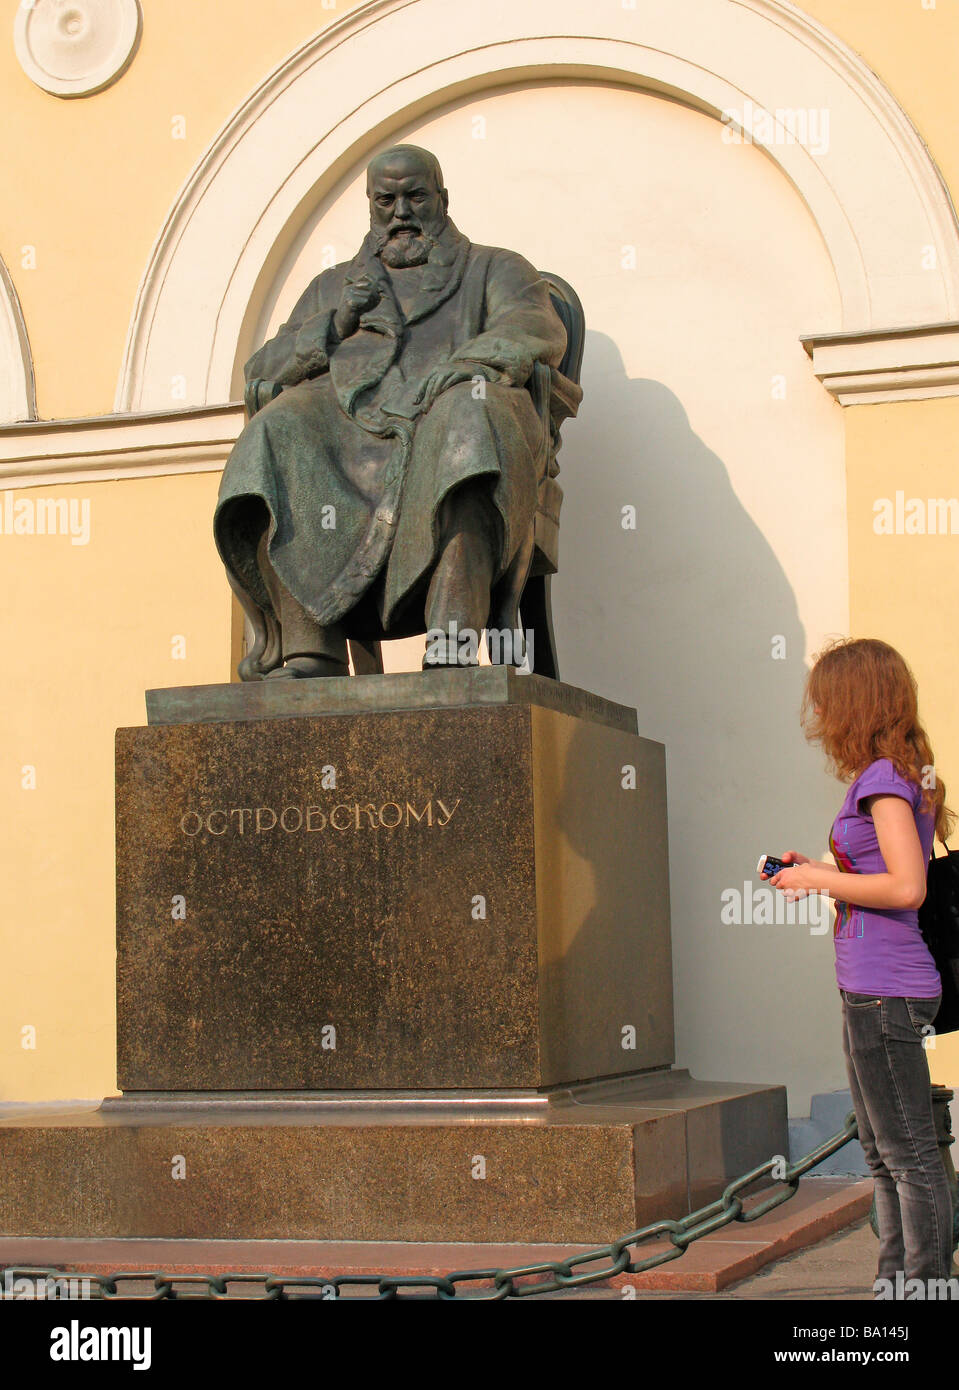 Statua al famoso scrittore russo Ostrovskii Foto Stock